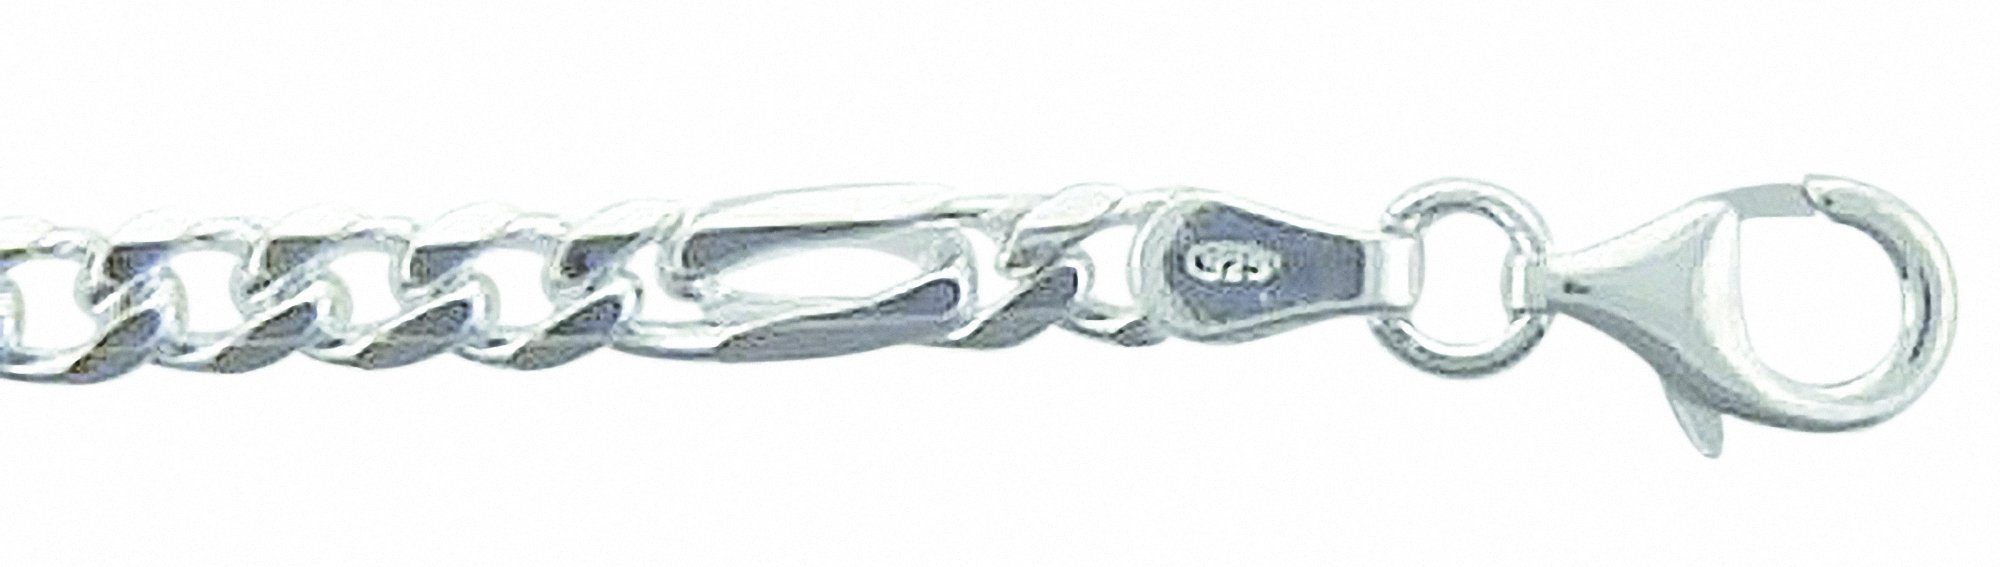 Damen Schmuck Adelia´s Silberarmband 925 Silber Fantasie Armband 19 cm, 925 Sterling Silber Fantasie​kette Silberschmuck für Dam